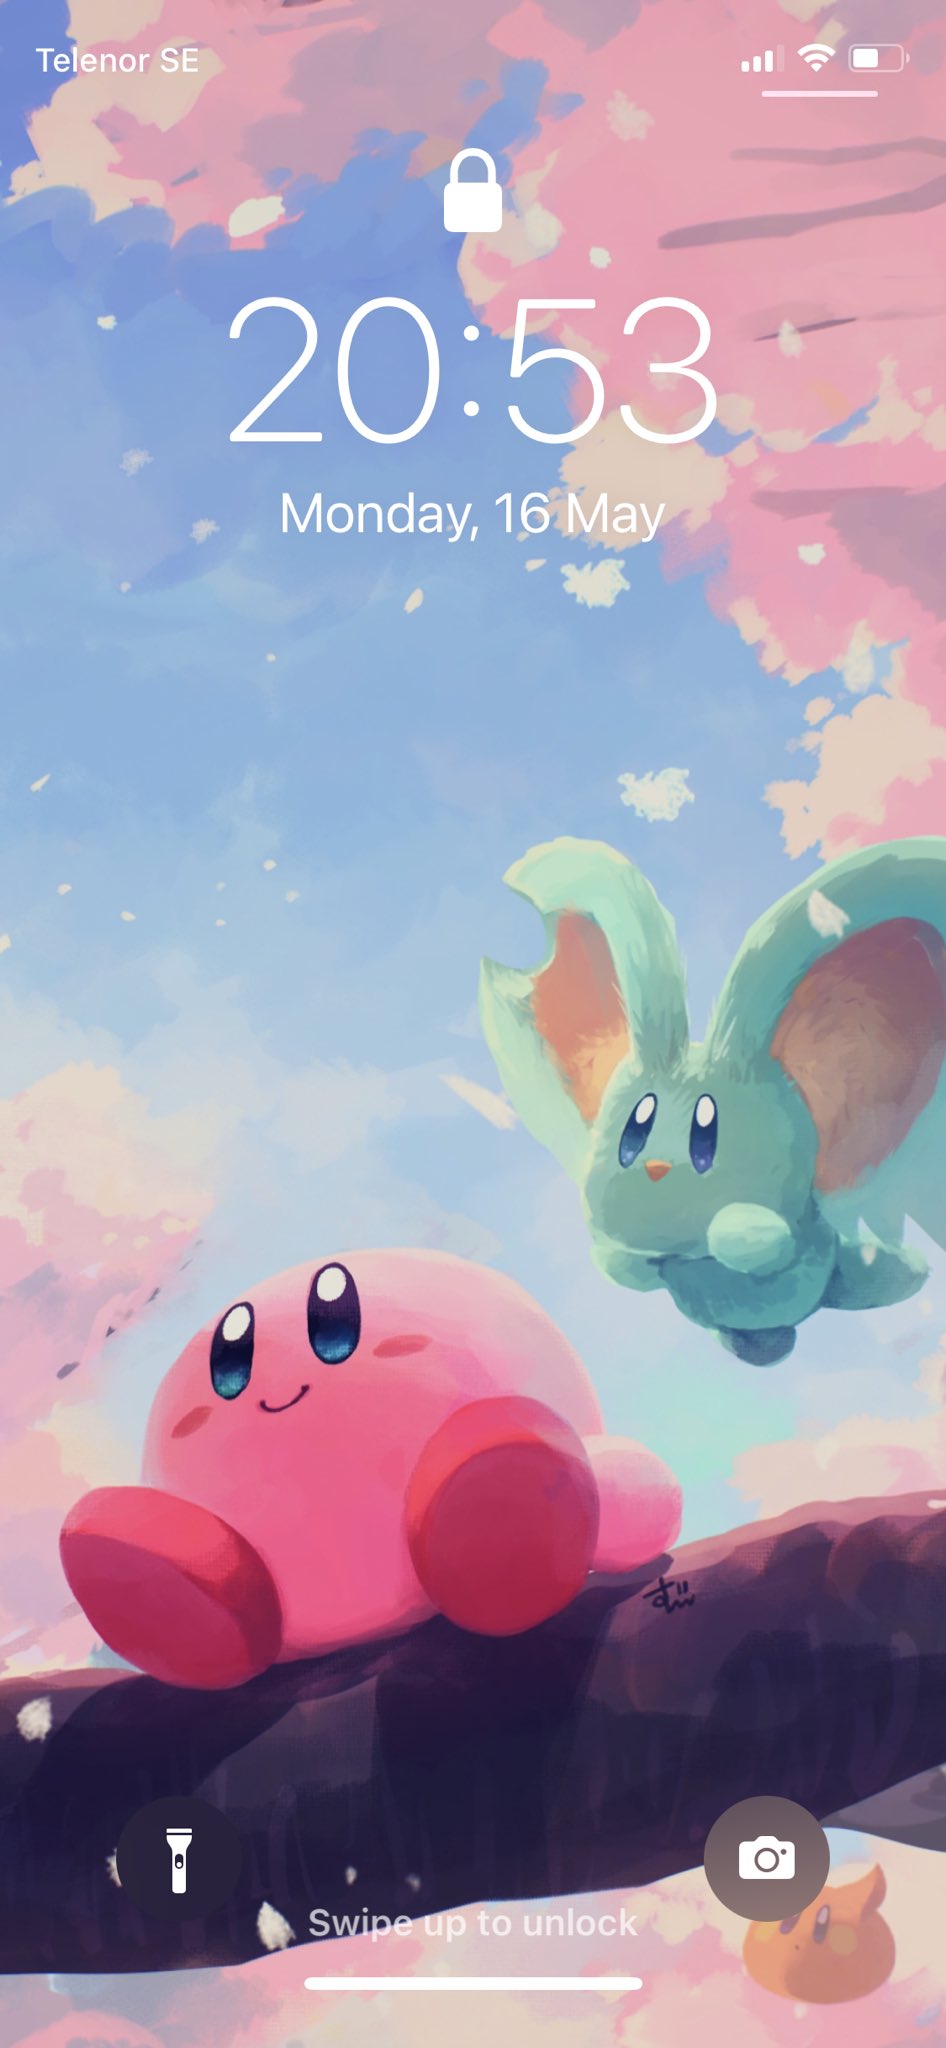 Với những hình nền điện thoại Kirby đáng yêu, bạn sẽ thấy đây là những thiết kế độc đáo và tươi sáng. Những hình ảnh tỉ mỉ và đầy tình cảm mang đến cho bạn cảm giác dễ chịu nhất có thể. Hãy xem qua những hình ảnh này và tìm thấy sự đáng yêu và ngọt ngào nơi chú nhóc Kirby.